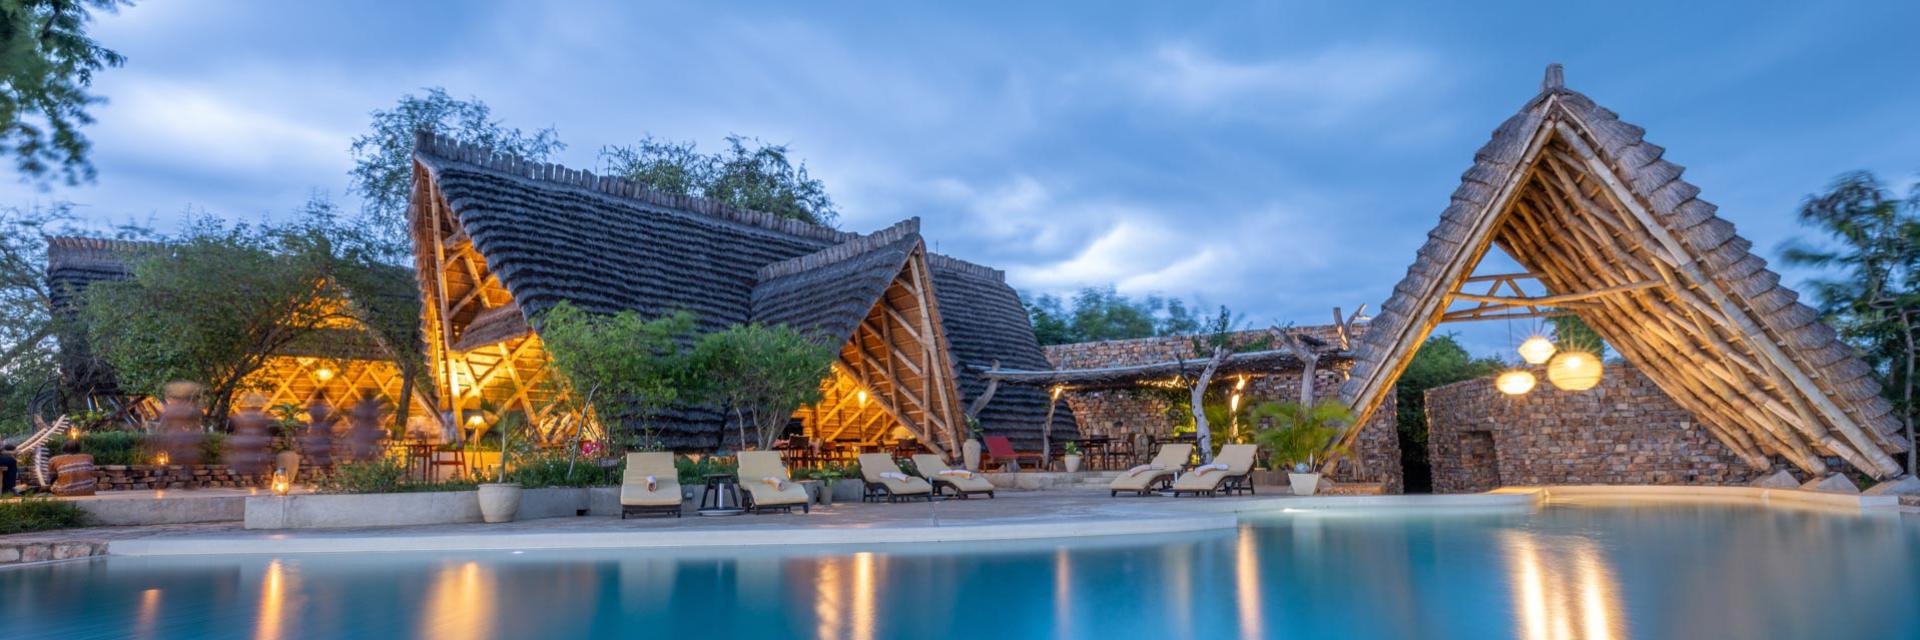 Nile Safari Lodge 